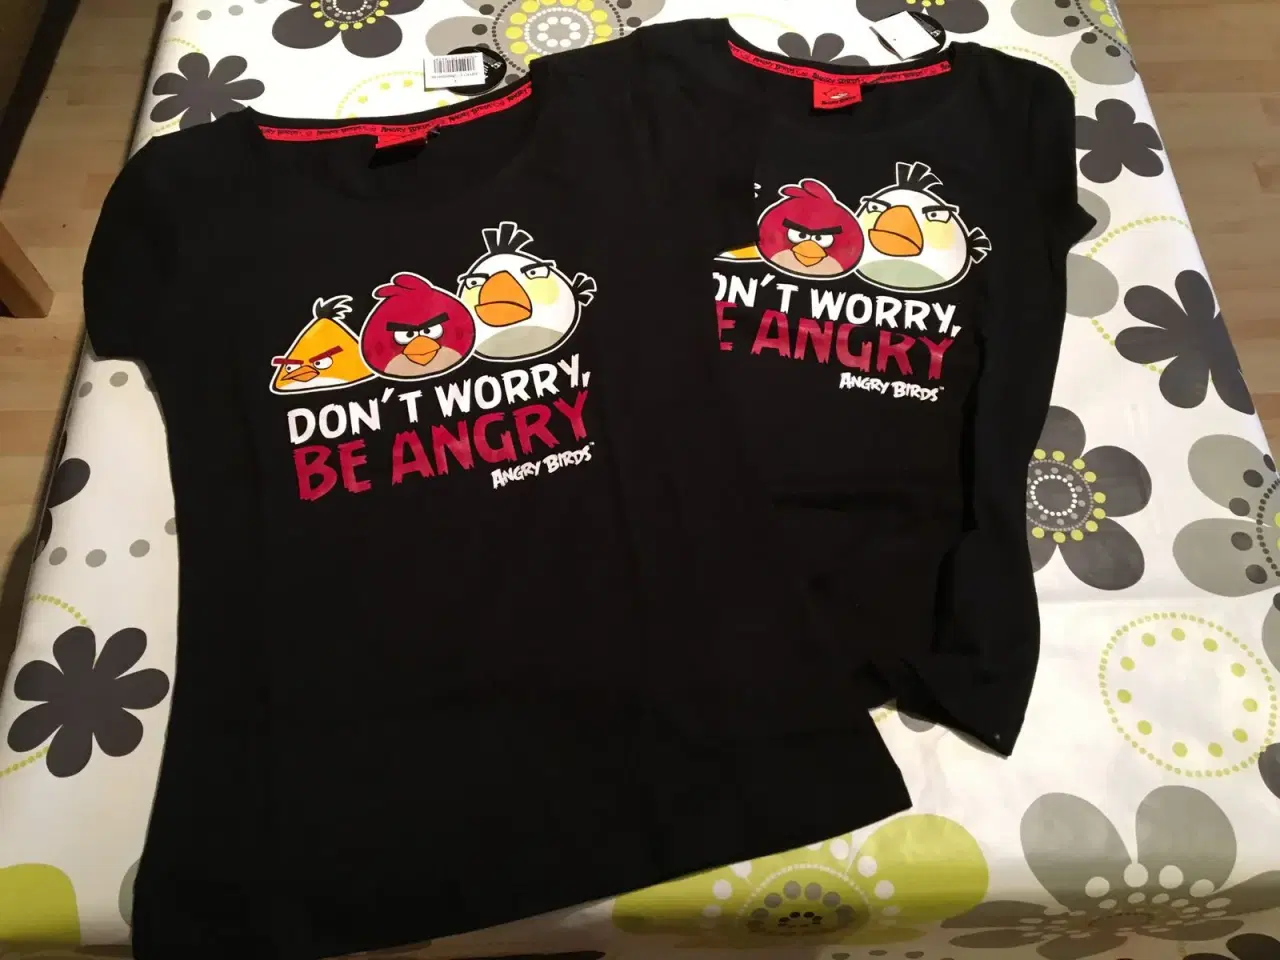 Billede 3 - Angry birds t-shirt.